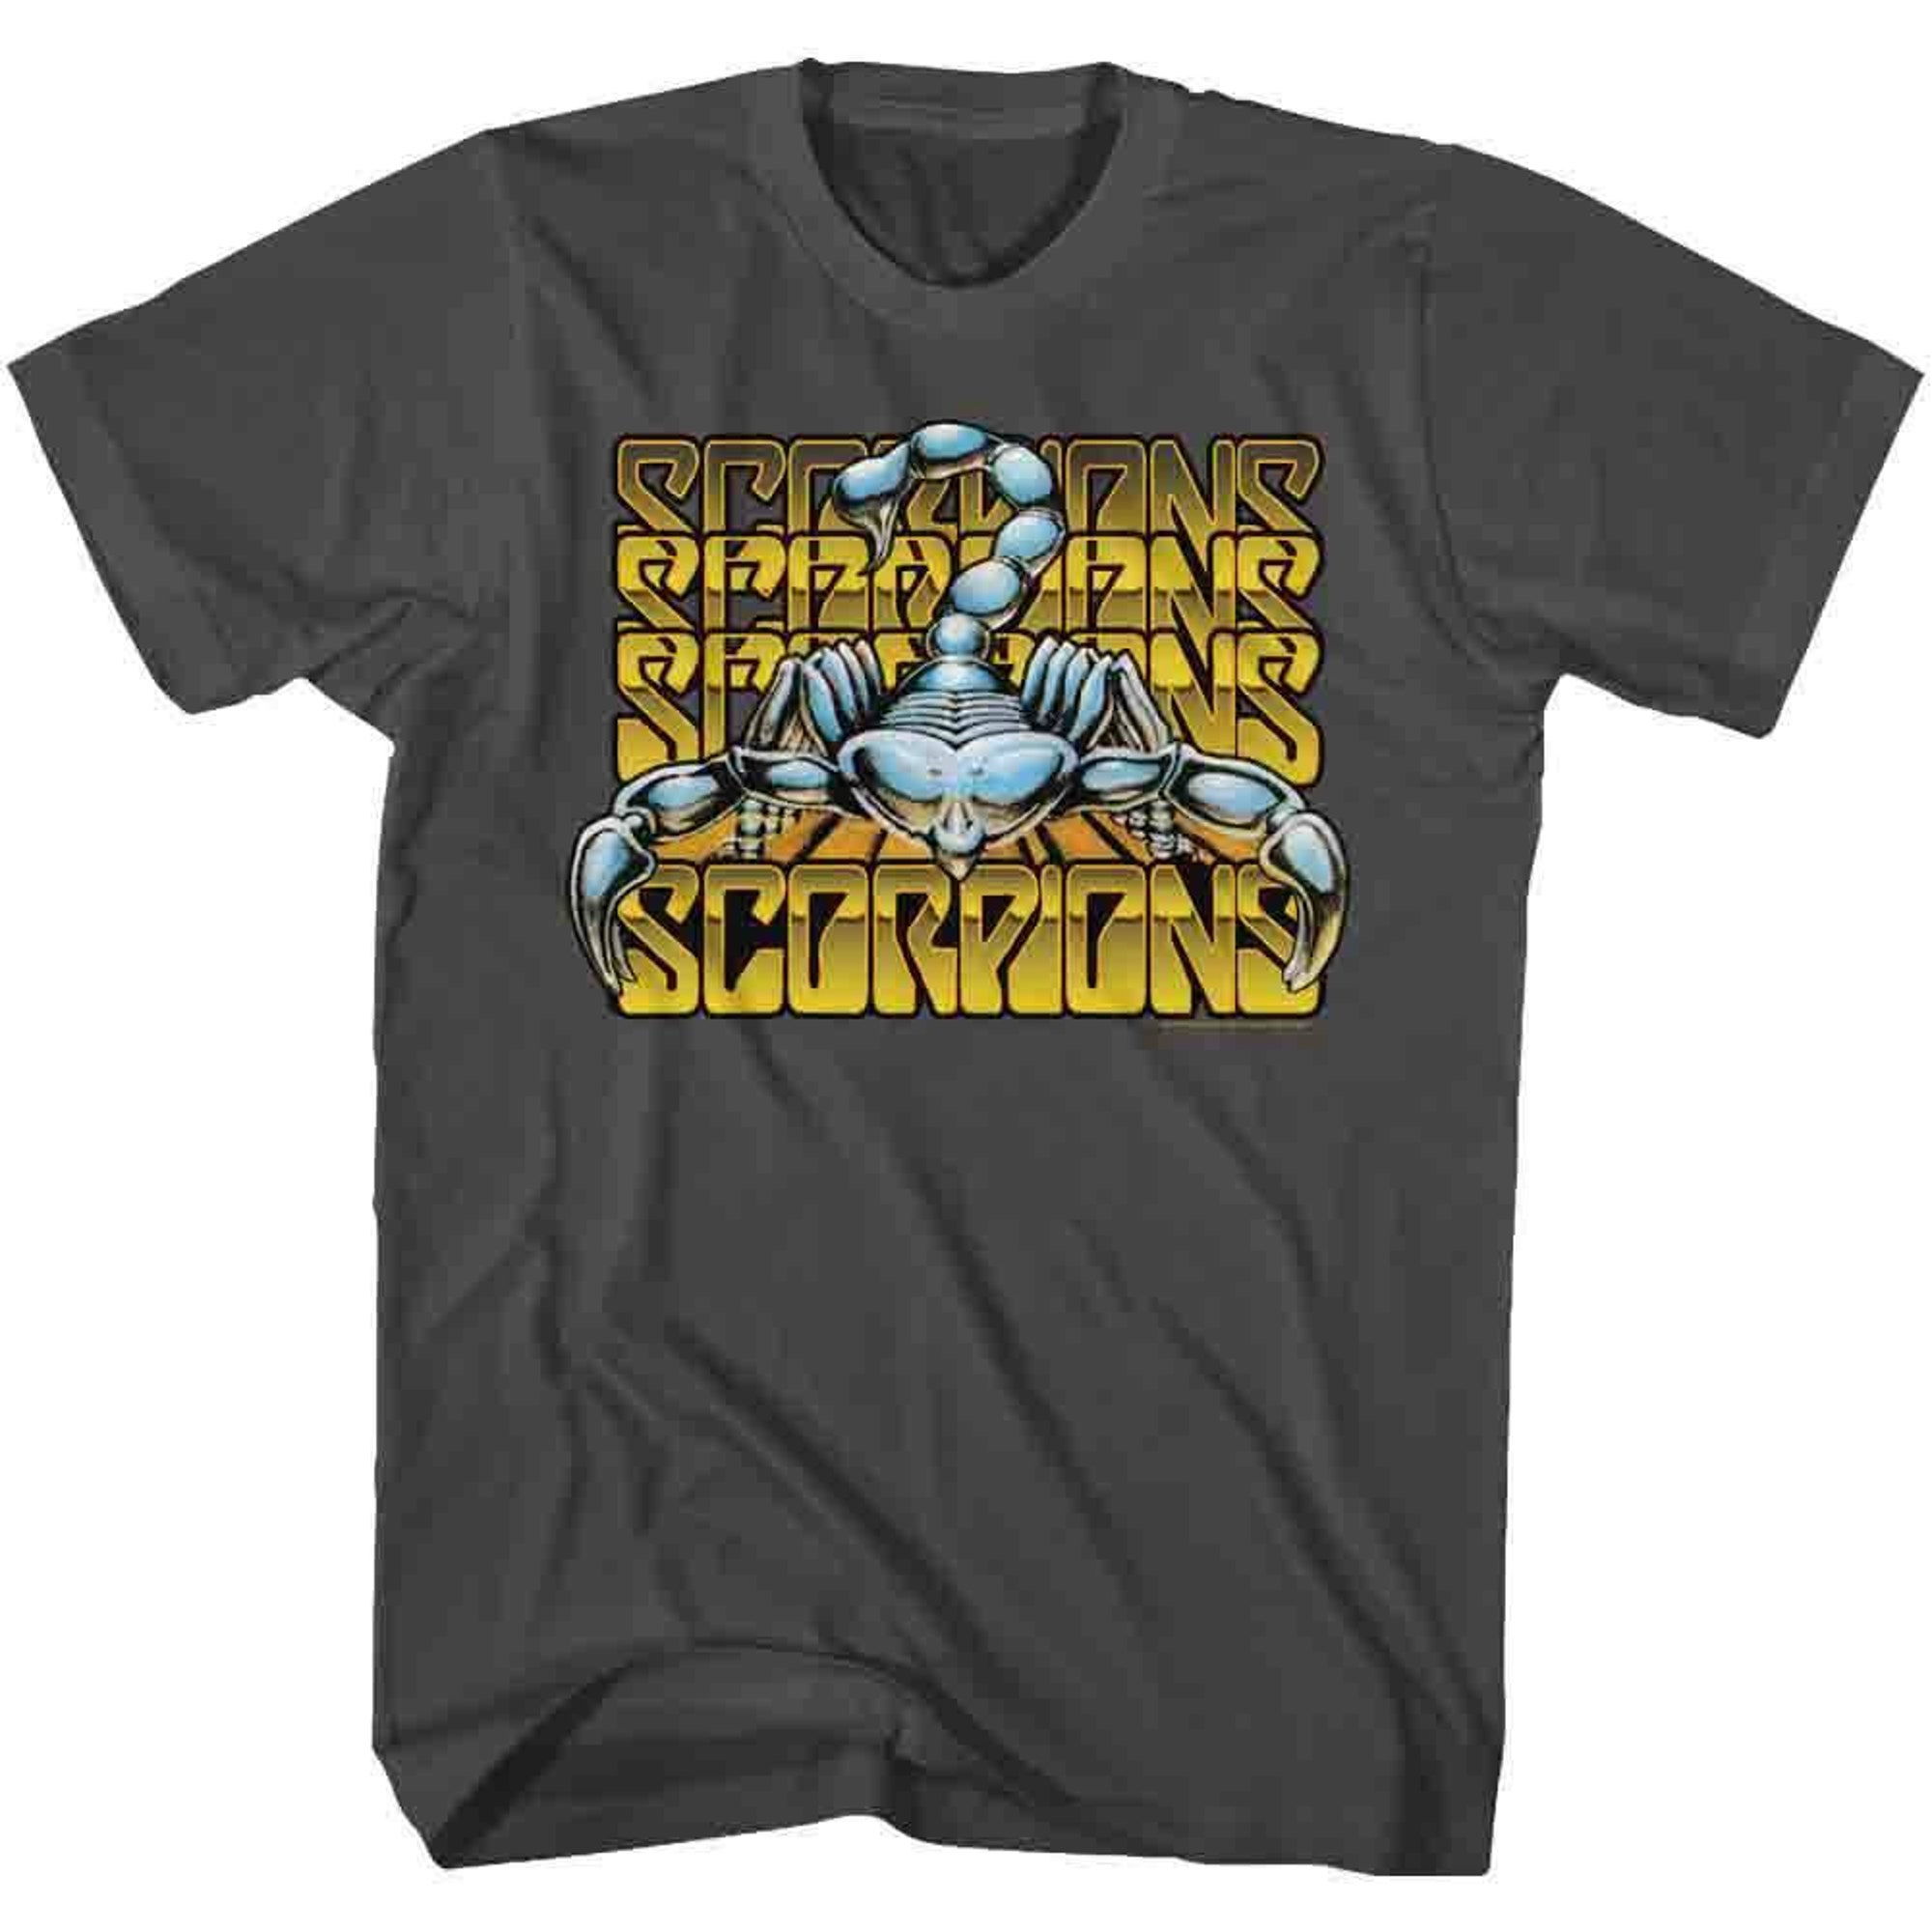 Scorpions Metallic Logos Smoke Adult T-Shirt